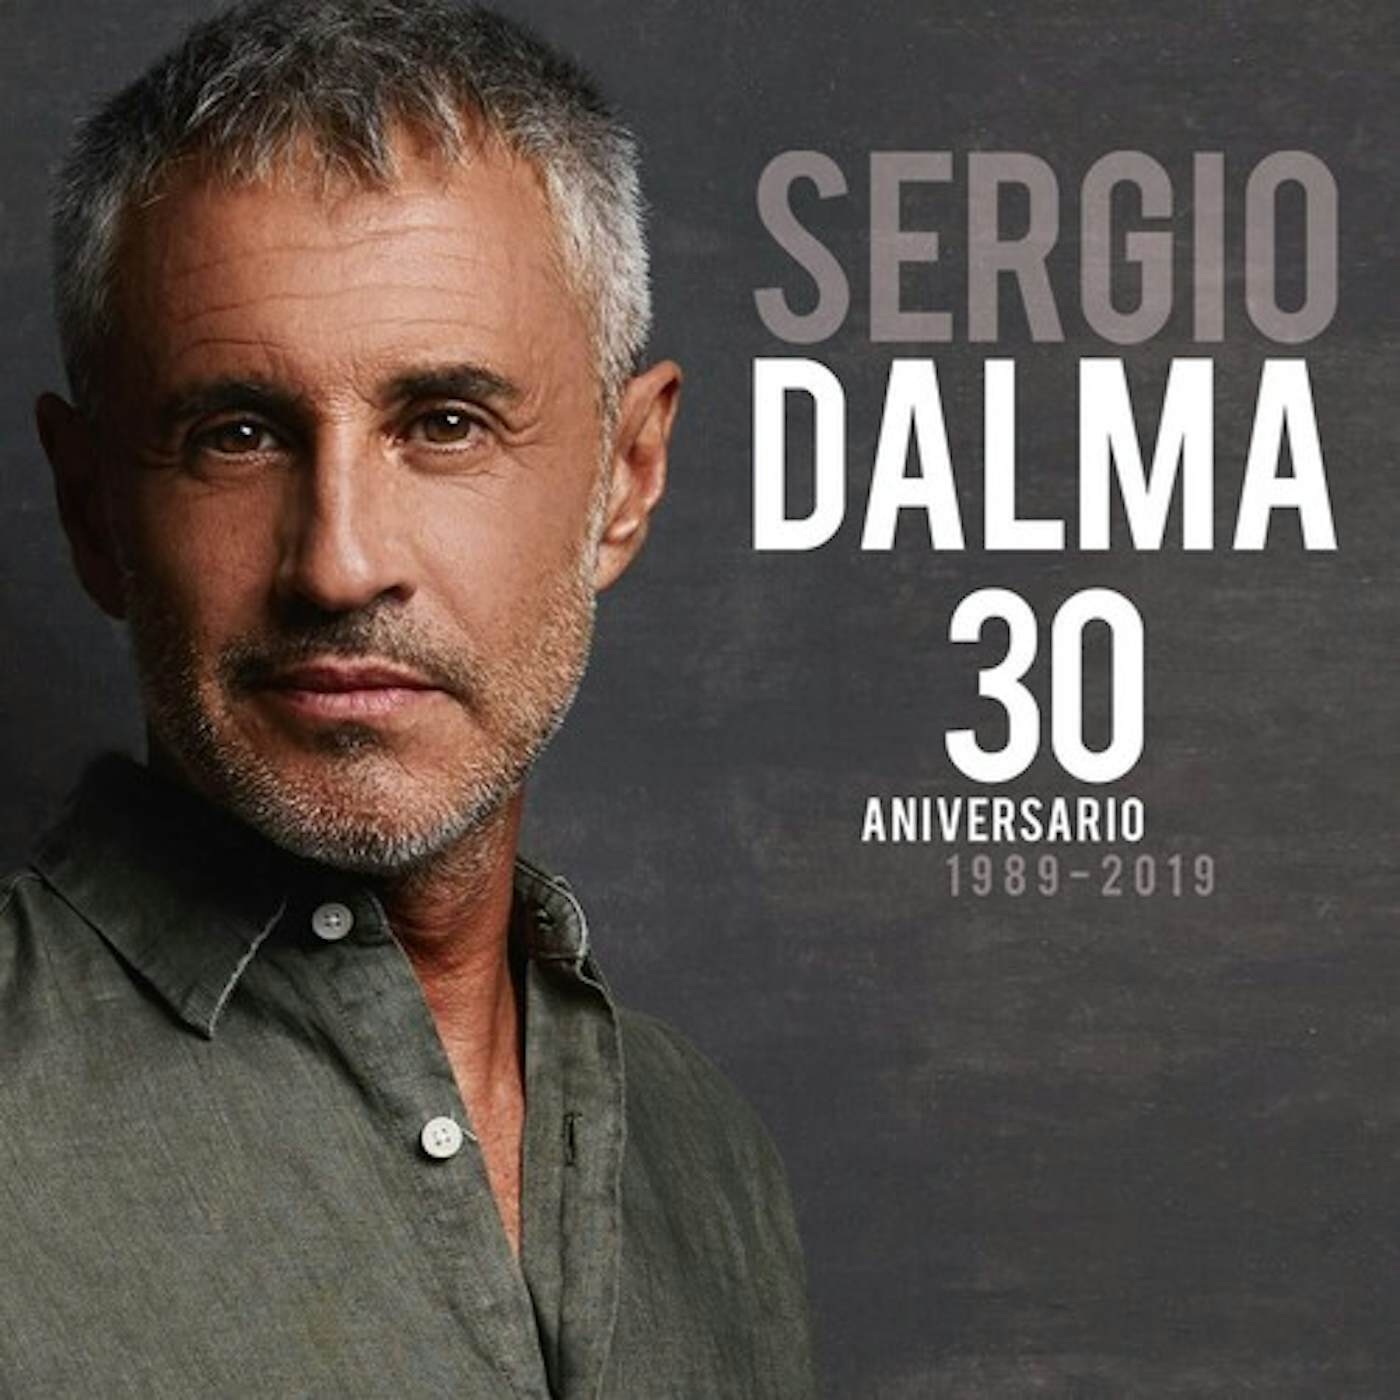 Sergio Dalma 30 ANIVERSARIO 1989-2019 Vinyl Record